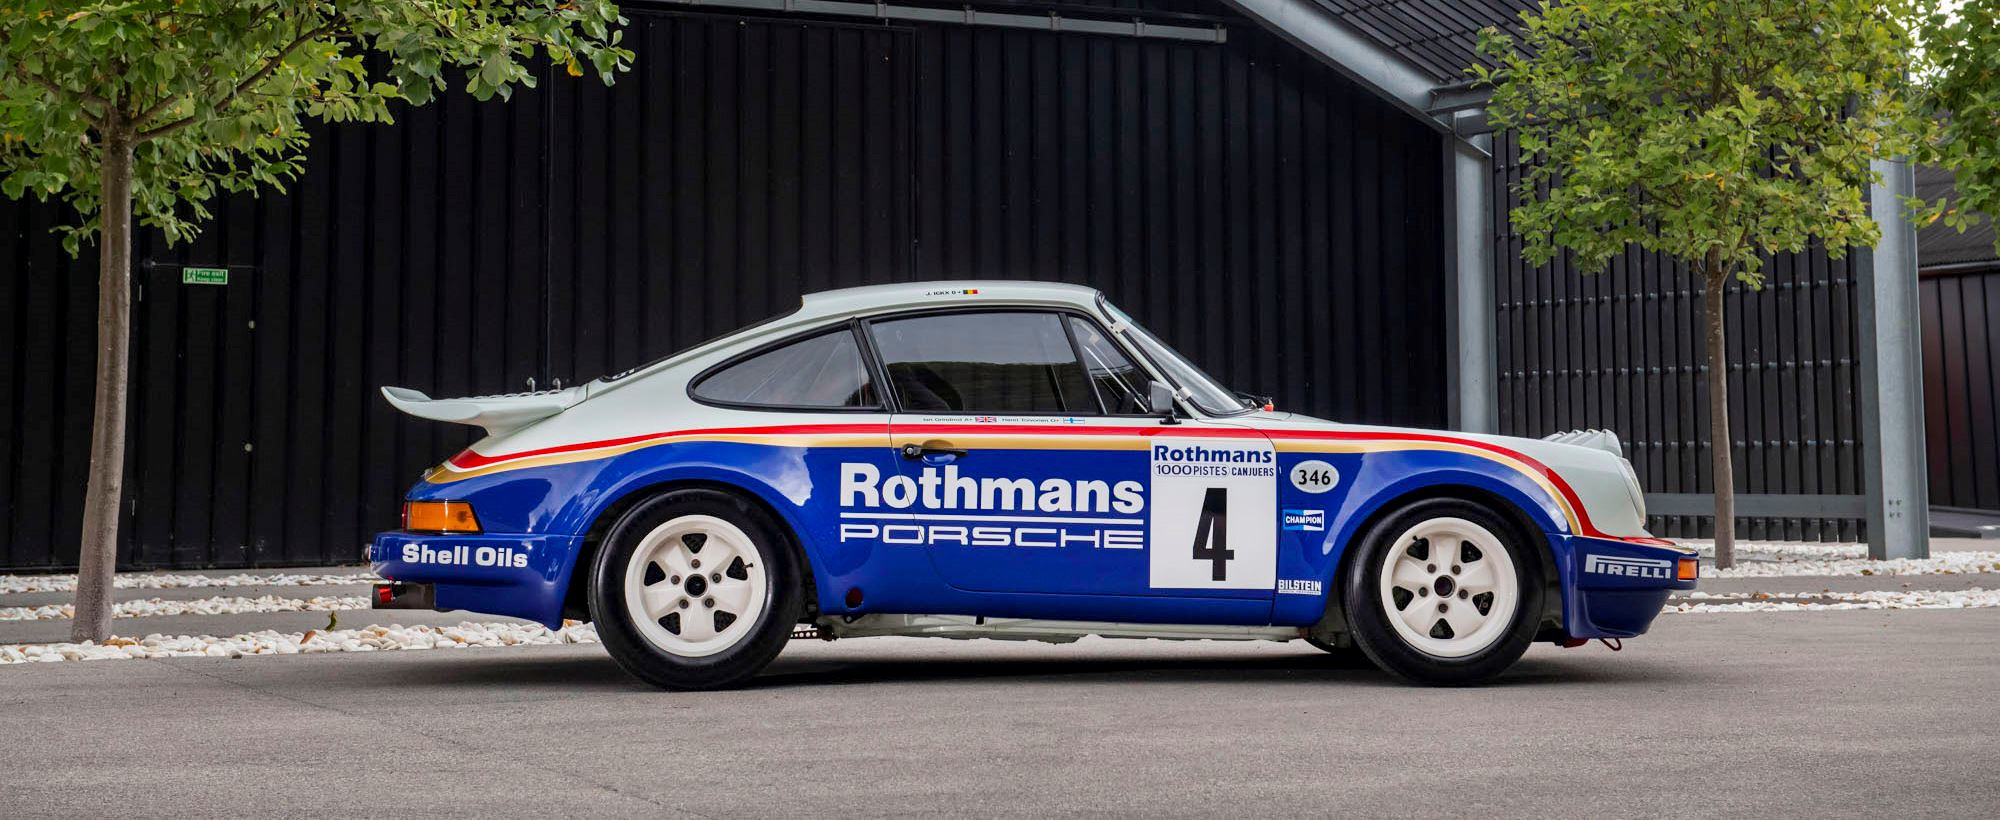 Porsche 911 Rothmans 072.jpg